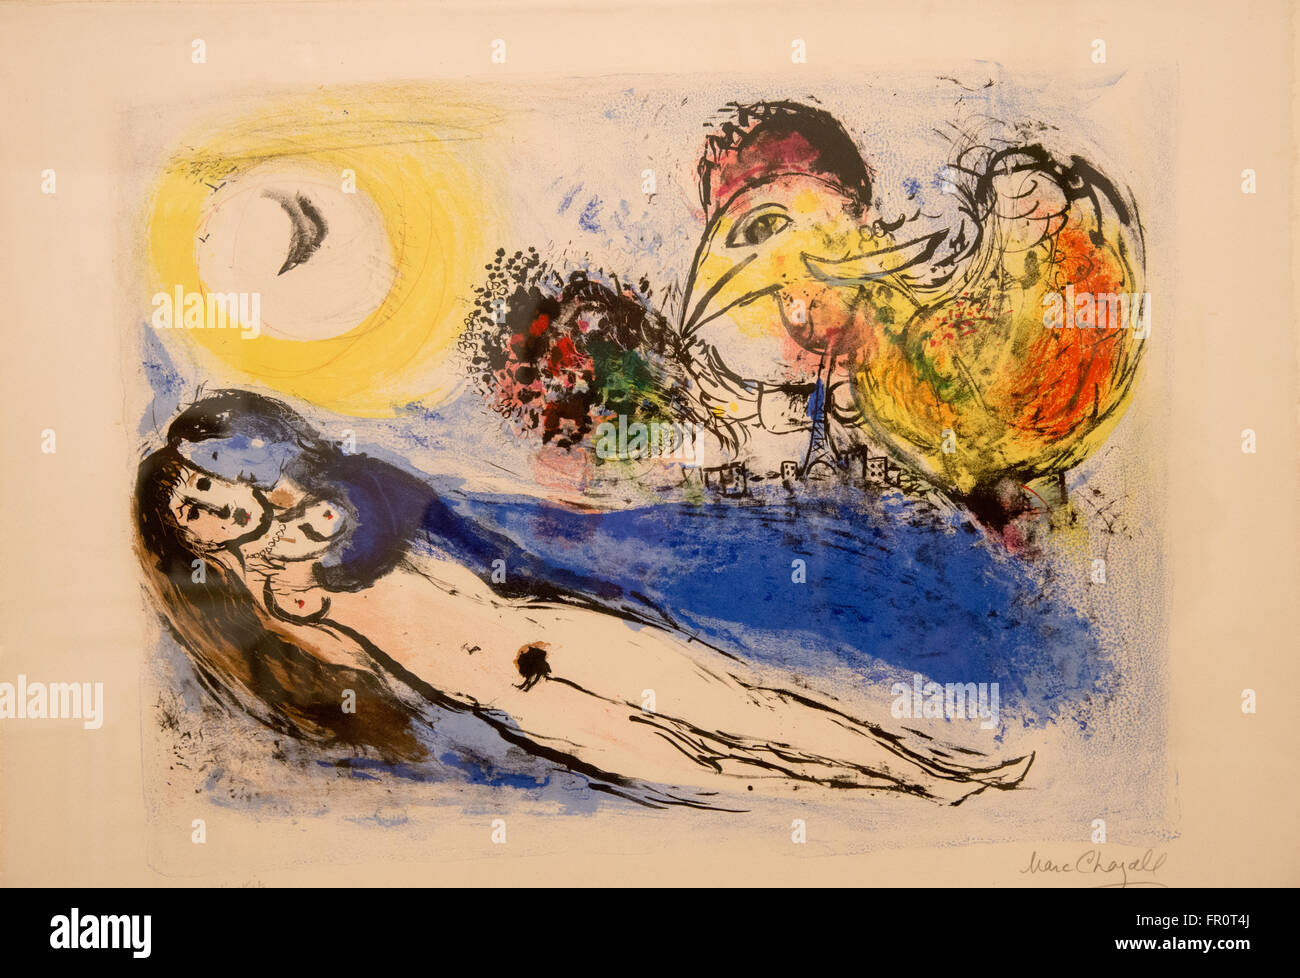 "Bonjour sur paris' chagall 1952 litografia Foto Stock